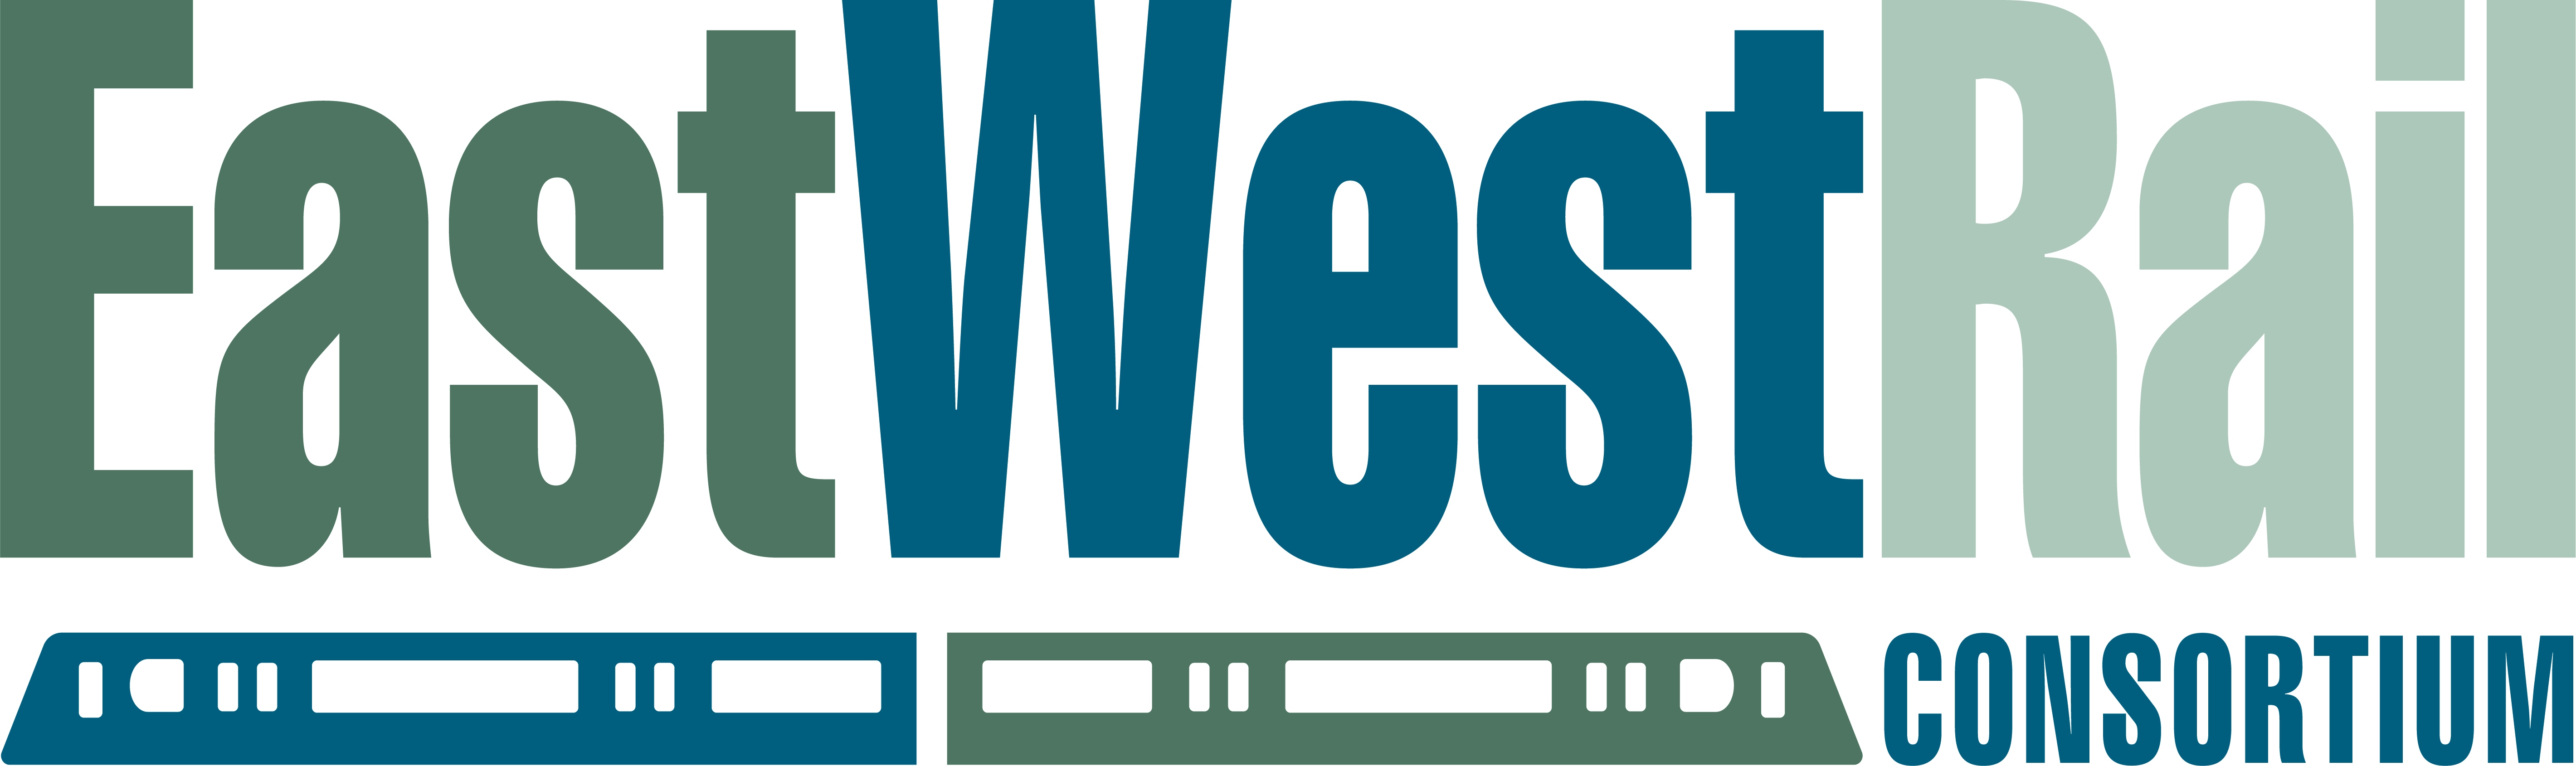 PR-East-West-Rail-Consortium.jpg